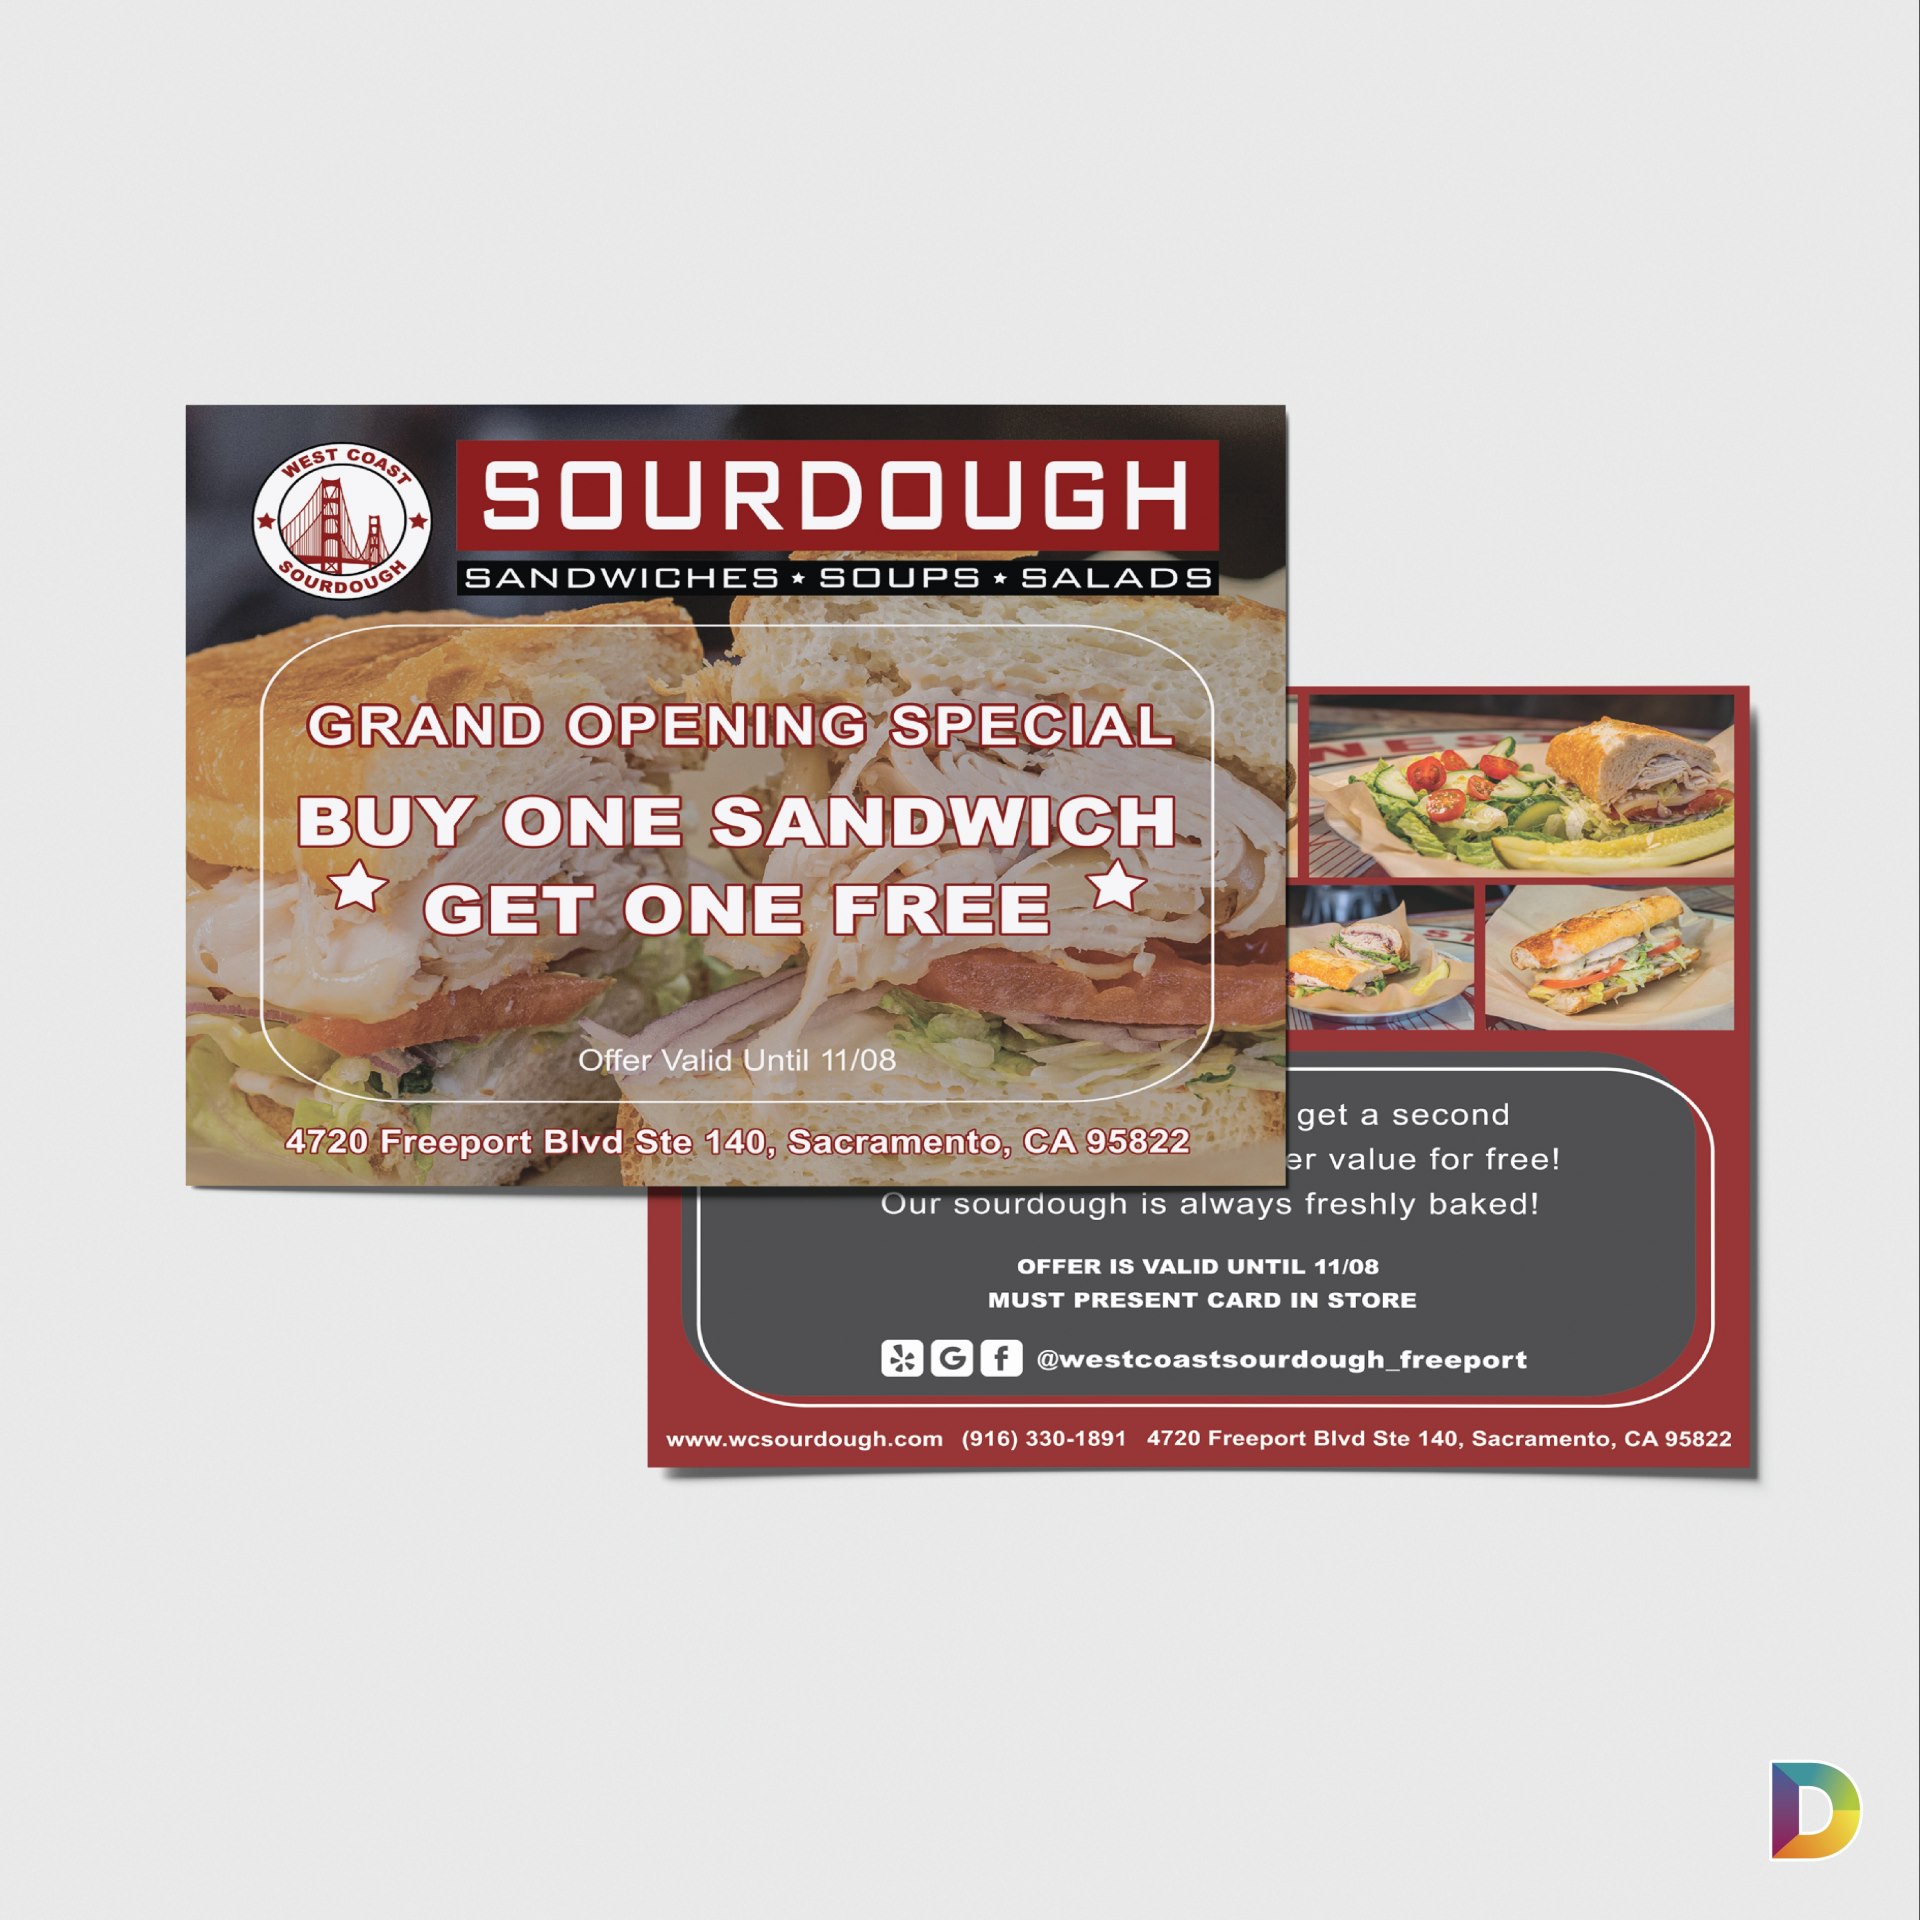 West coast sourdough business card - Graphic Design Services